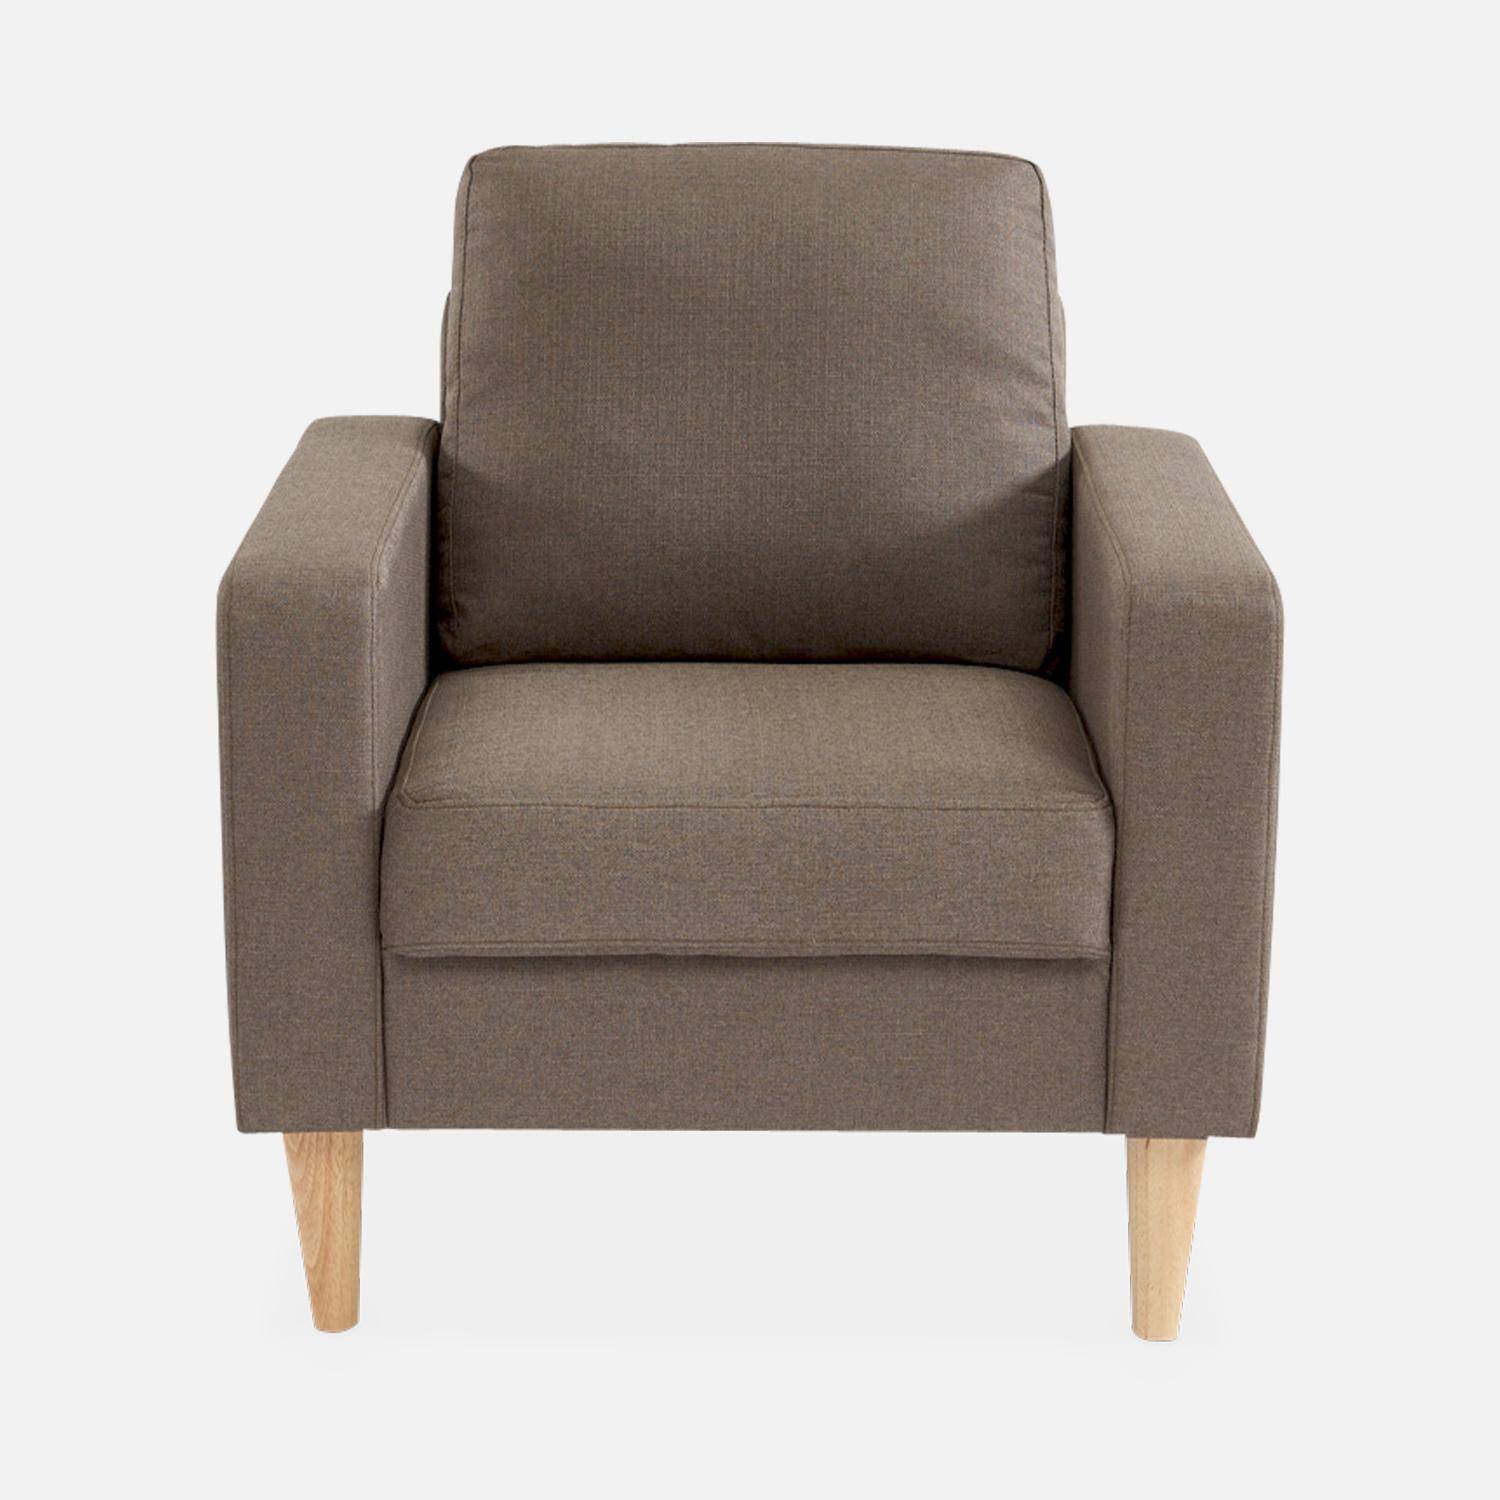 Bruine stoffen armstoel - Bjorn - 1-zits sofa met houten poten, Scandinavische stijl Photo3